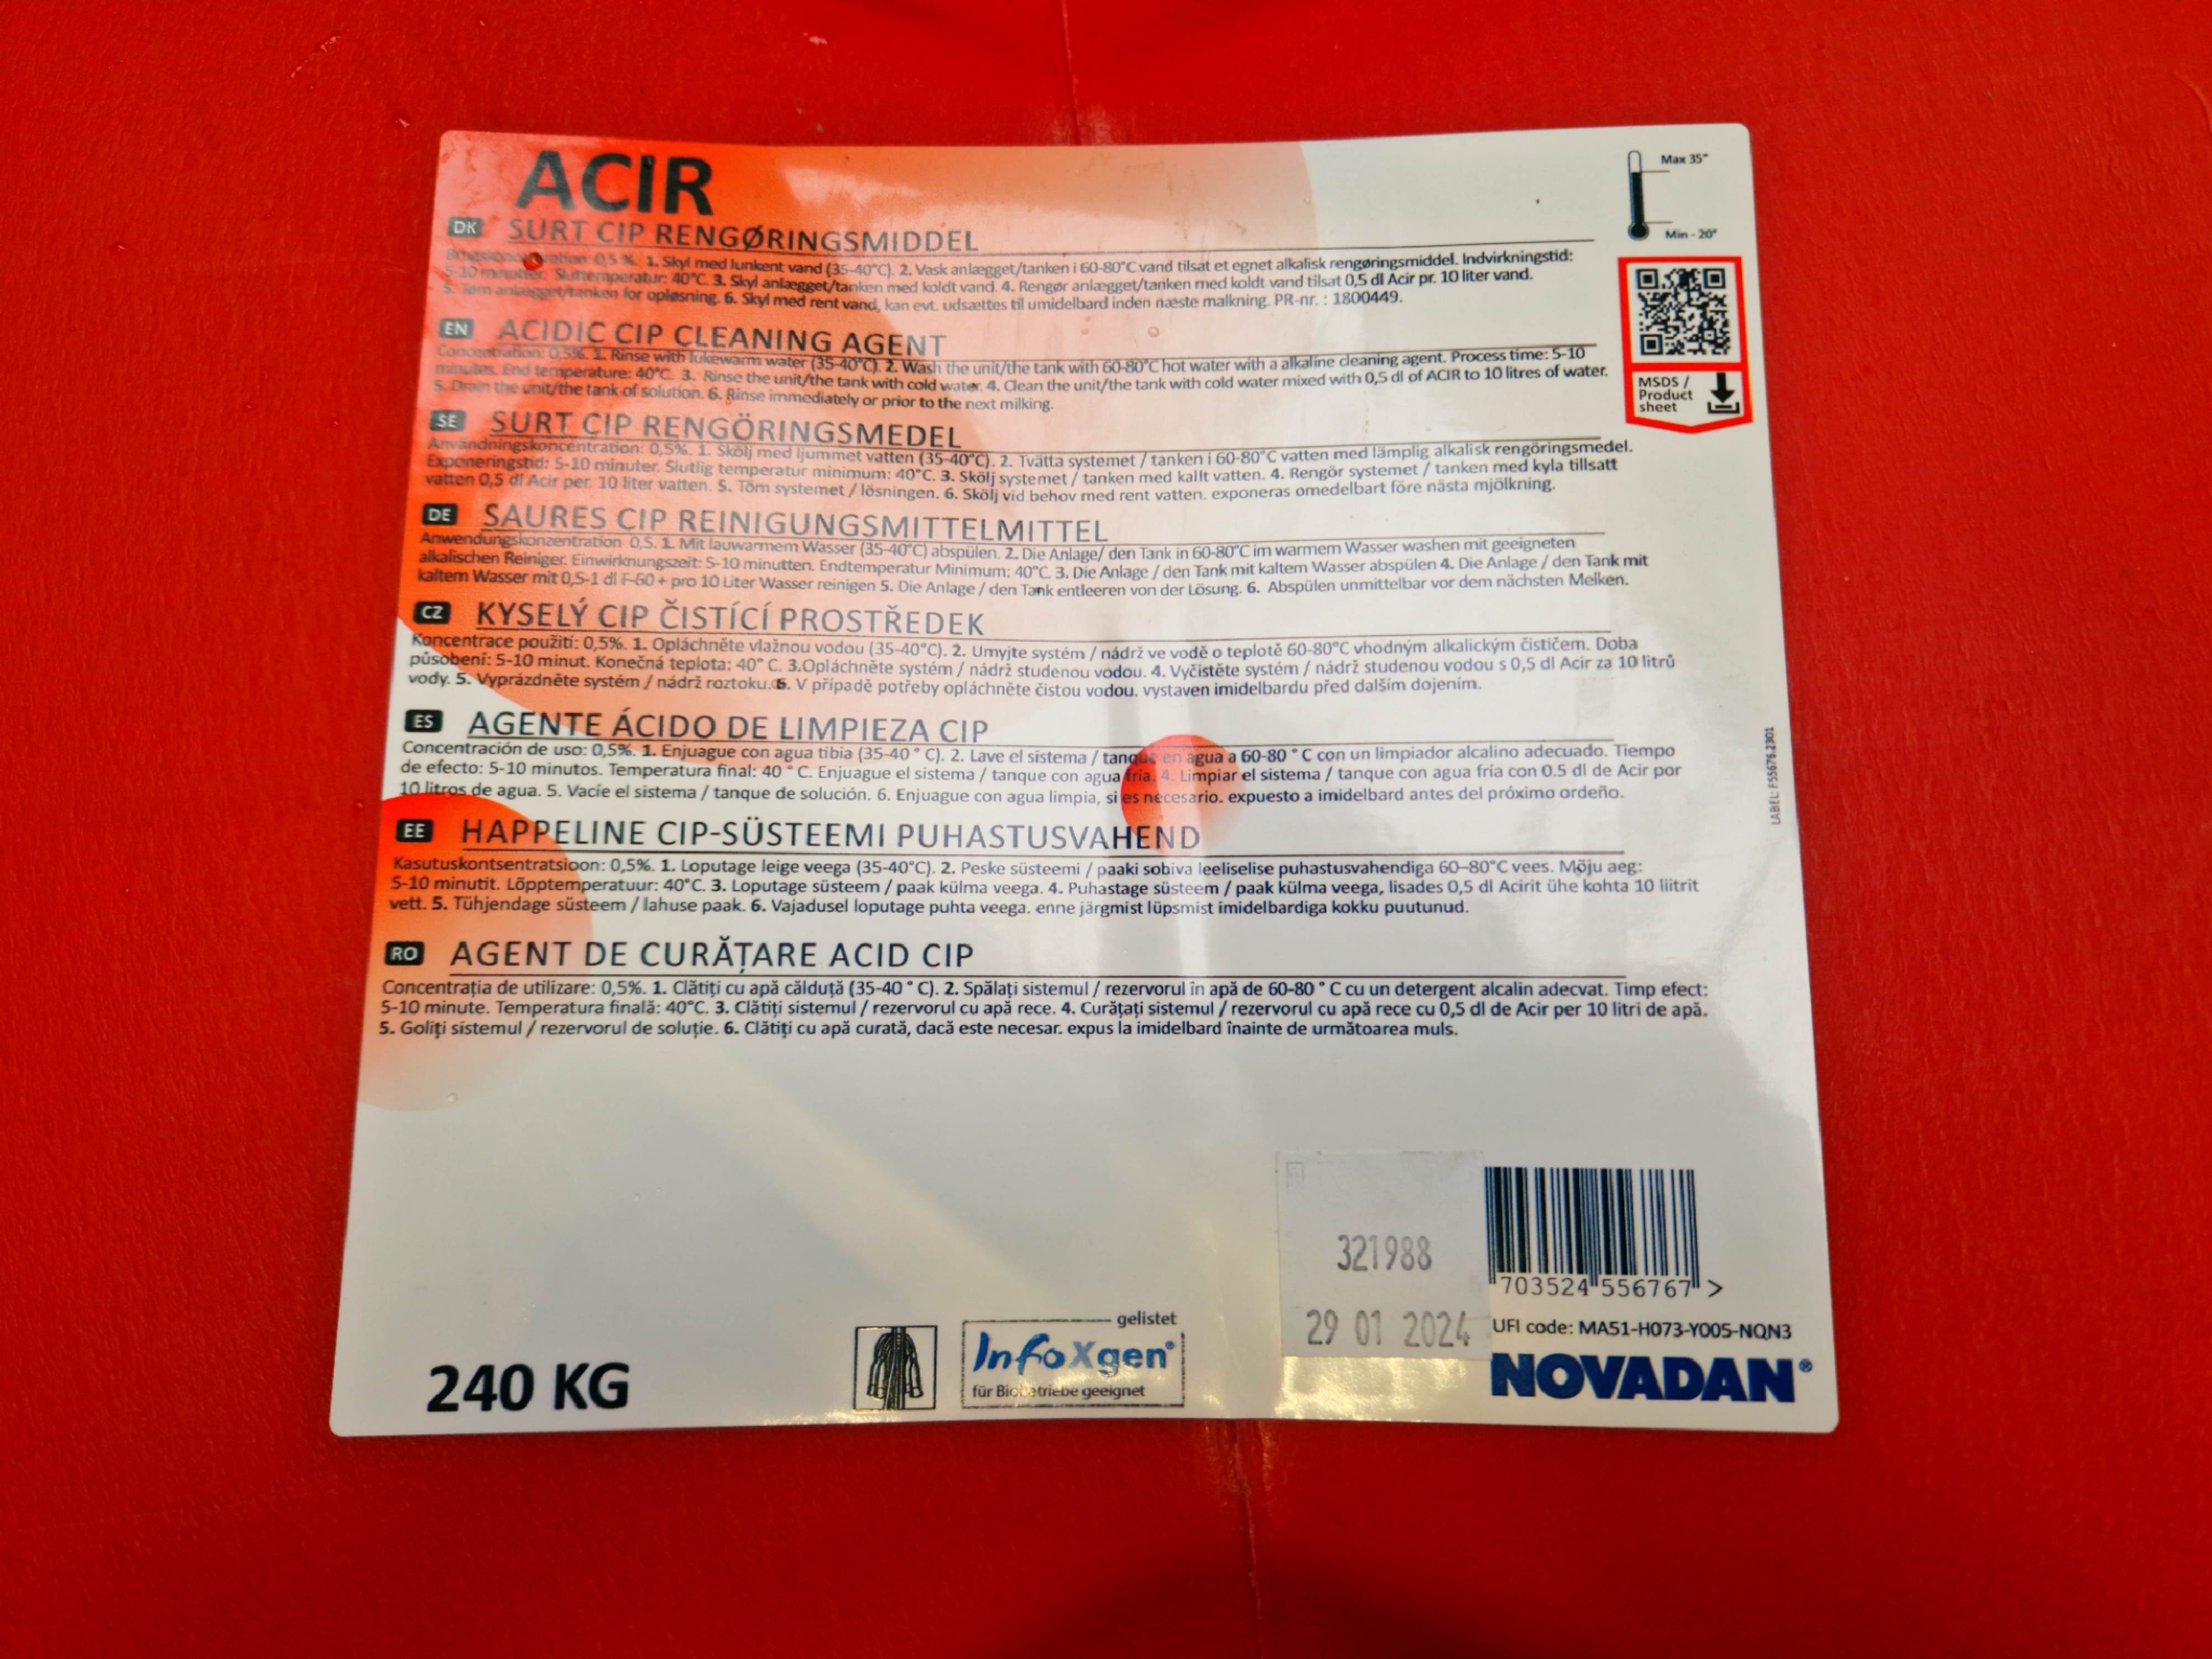 Novadan - Acir sauer 240 Kg Fass CIP Reinigungsmittel